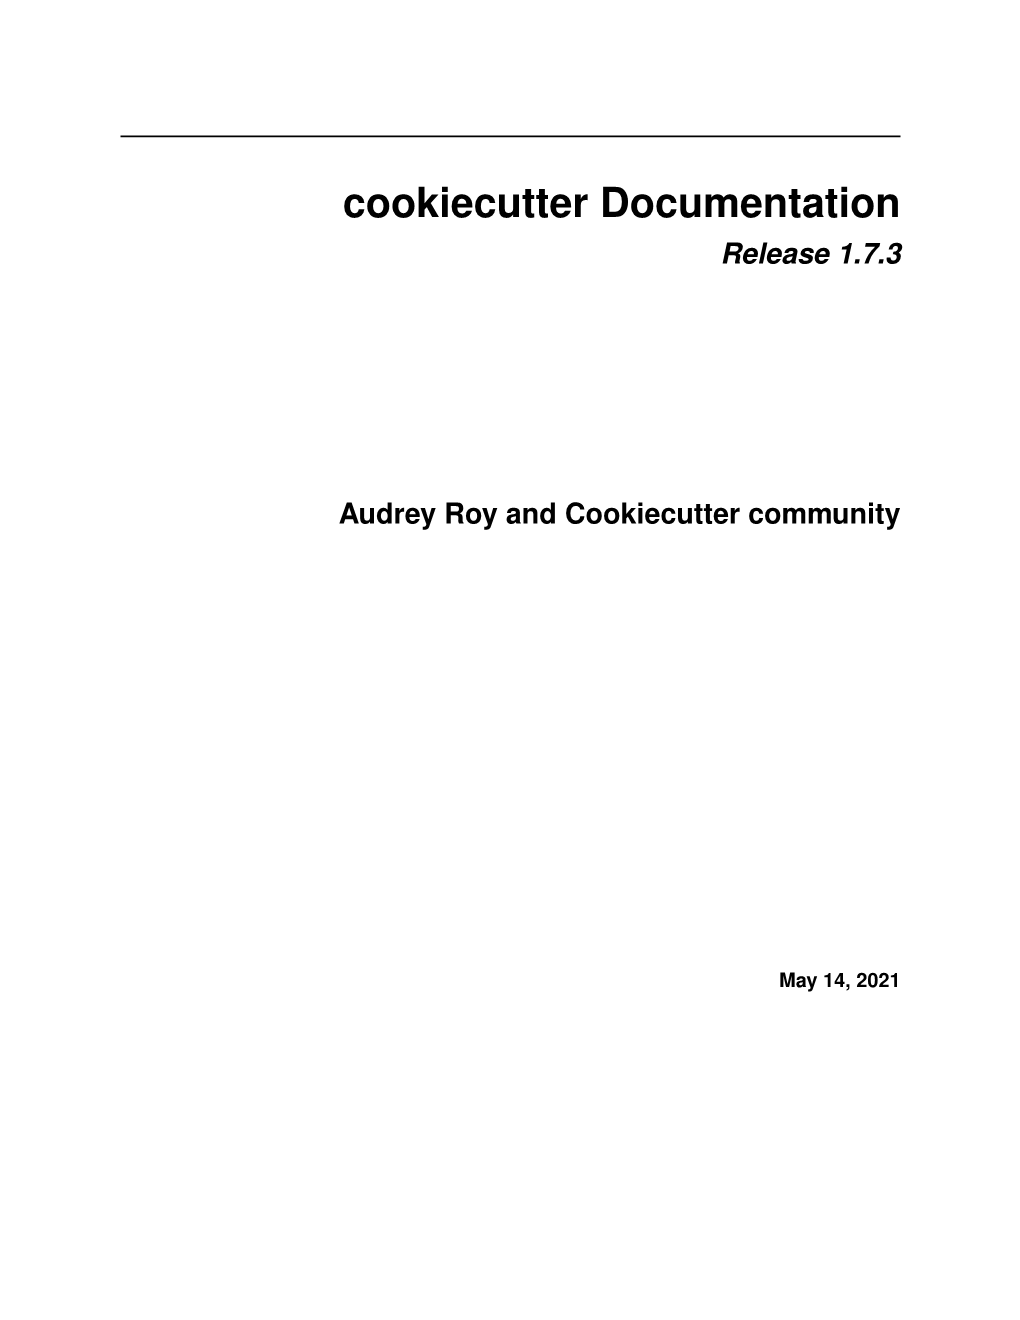 Cookiecutter Documentation Release 1.7.3